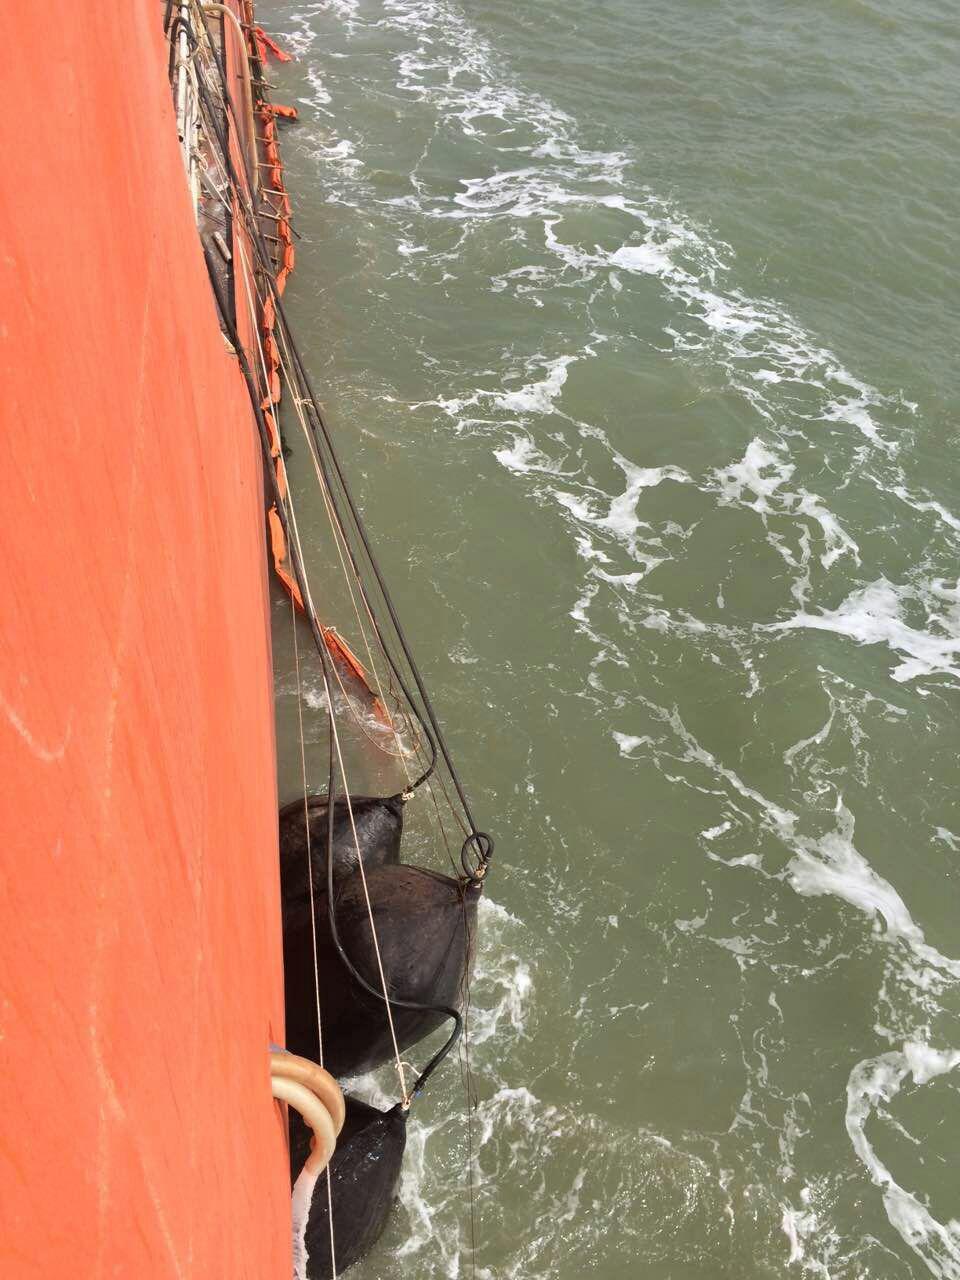 青岛永泰助浮气囊助力万吨搁浅油轮成功脱困